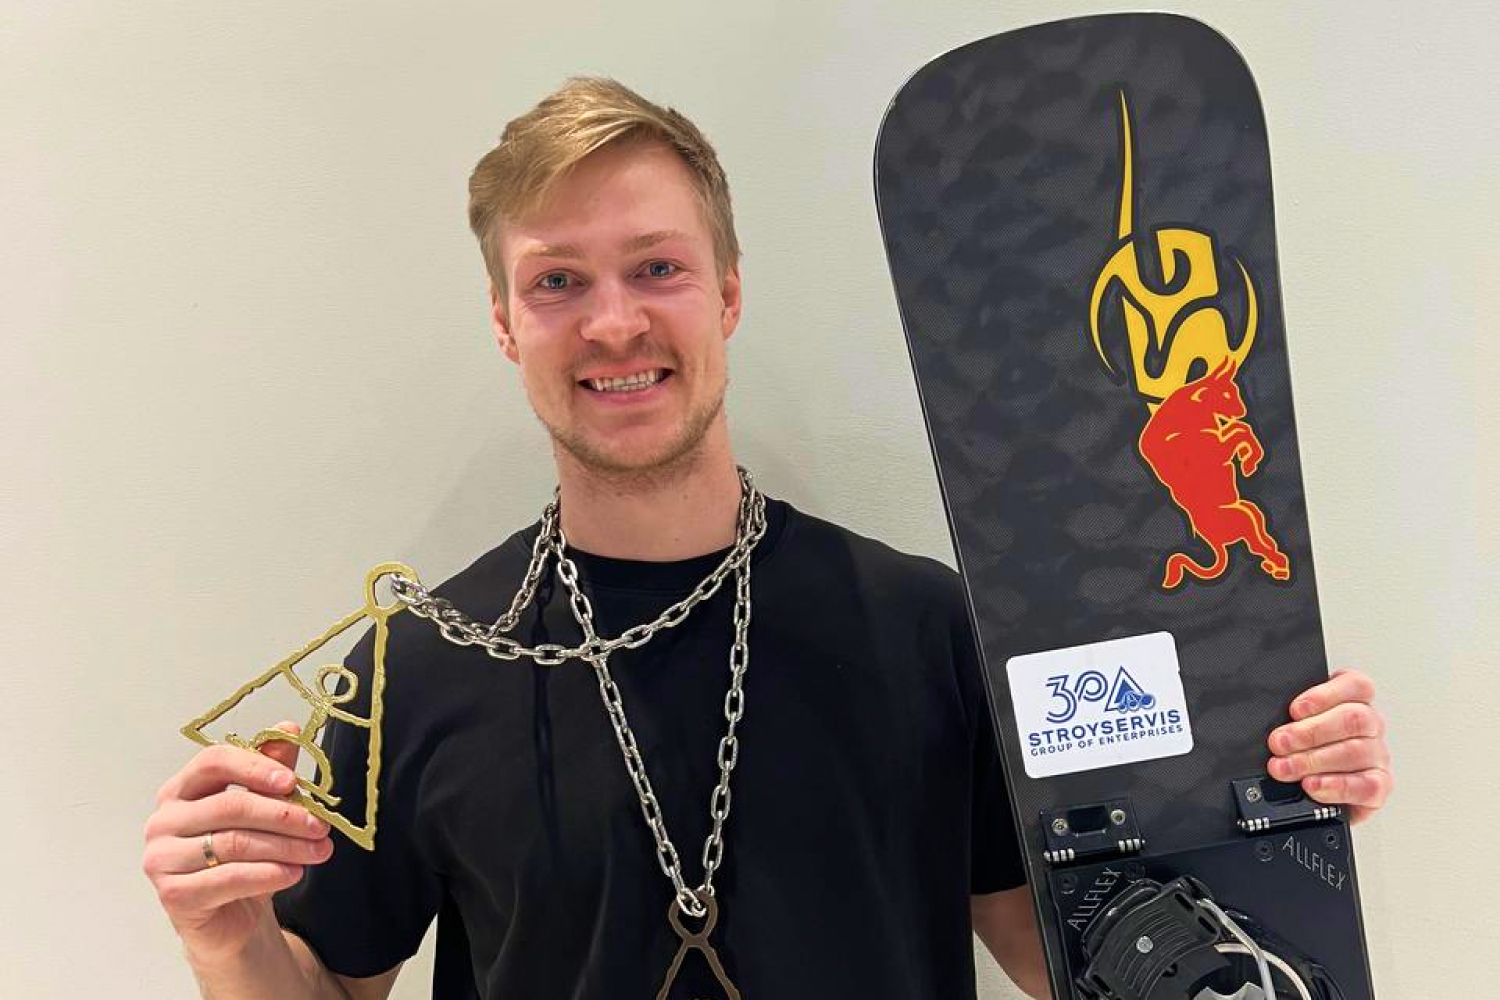 Известный российский спортсмен, выступающий при поддержке АО «Стройсервис», завоевал золото и бронзу на чемпионате России по сноуборду